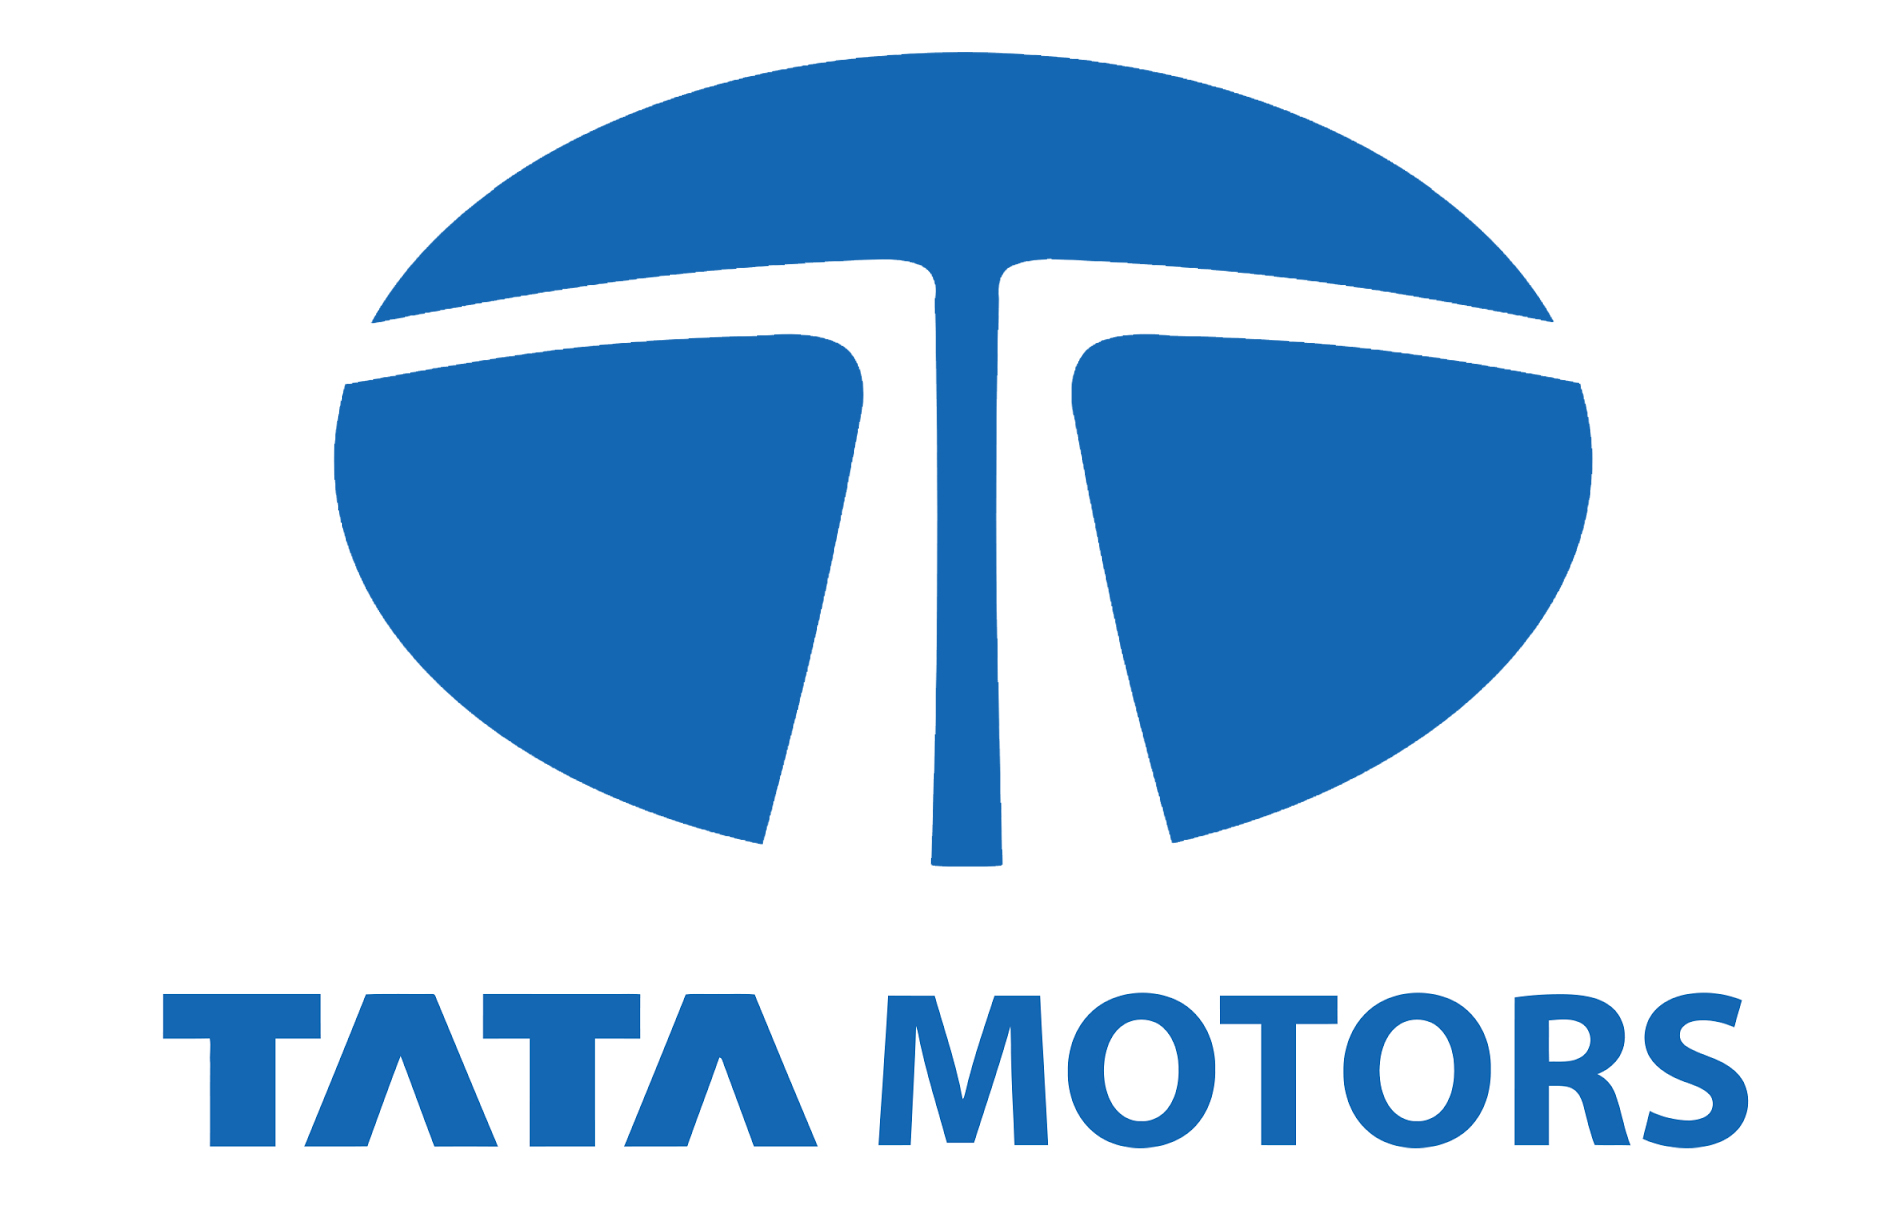 Tata Motors Cars Showroom - Max Motors|Show Room|Automotive